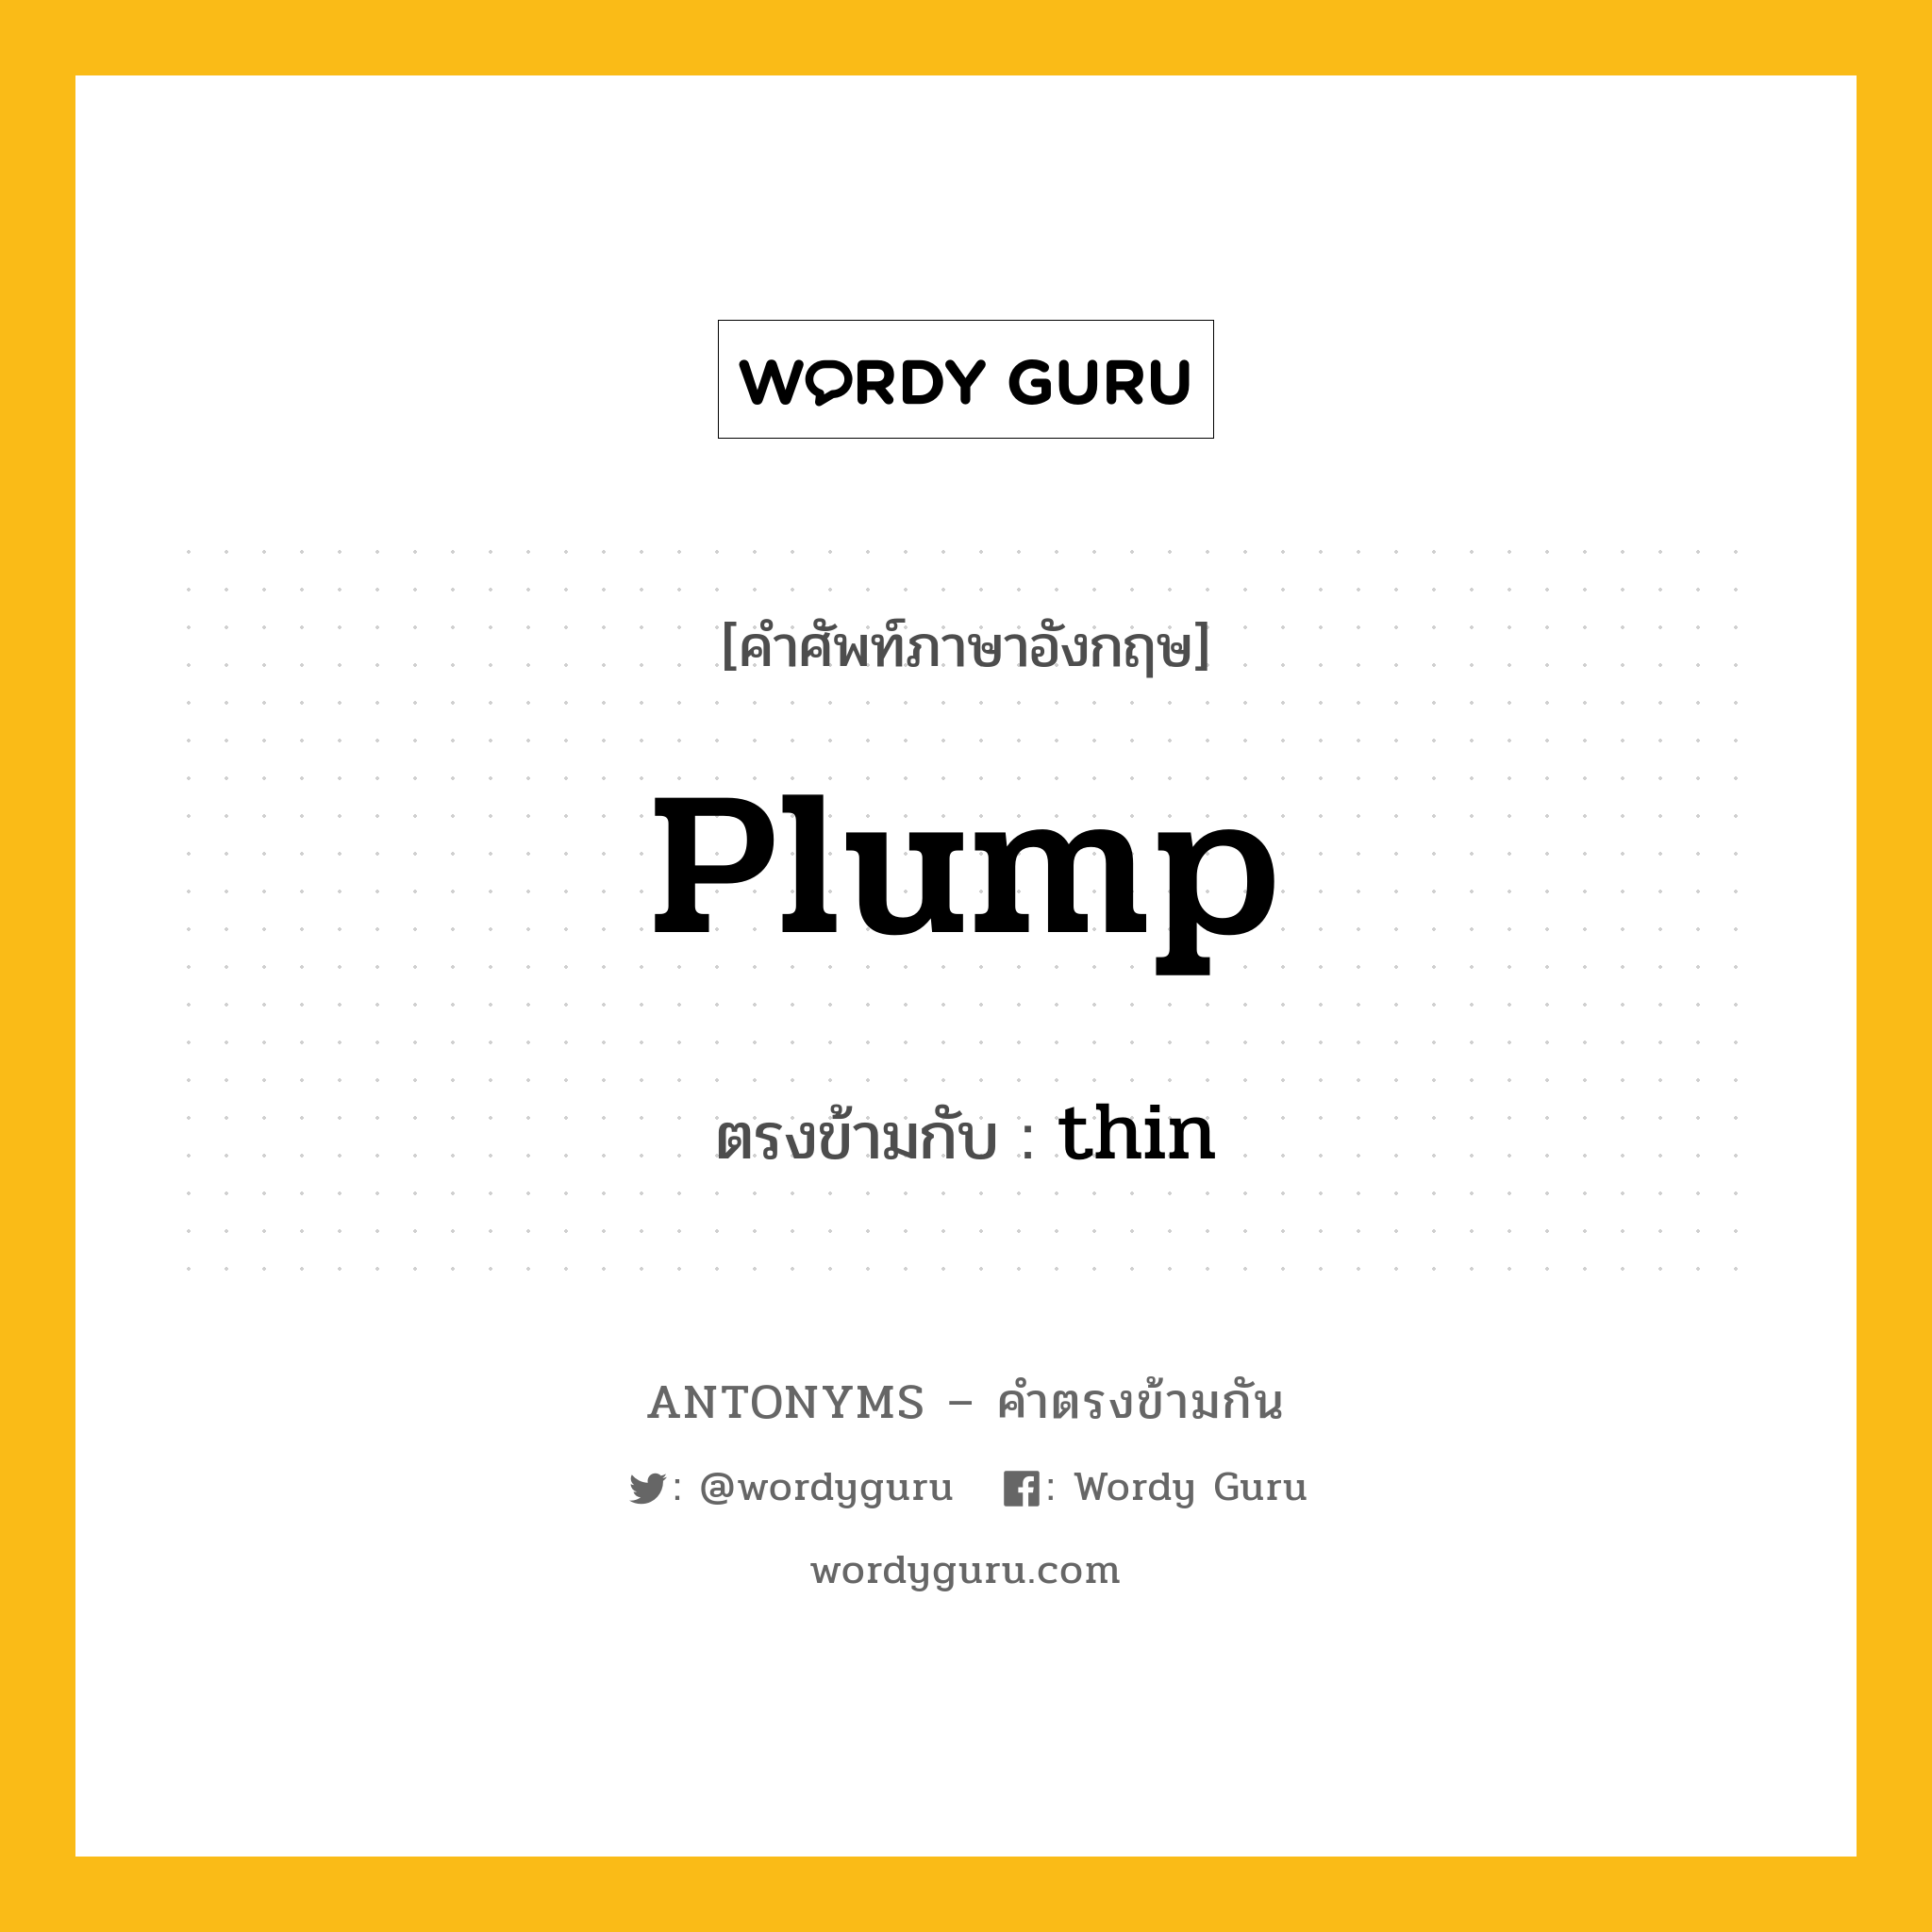 plump เป็นคำตรงข้ามกับคำไหนบ้าง?, คำศัพท์ภาษาอังกฤษ plump ตรงข้ามกับ thin หมวด thin